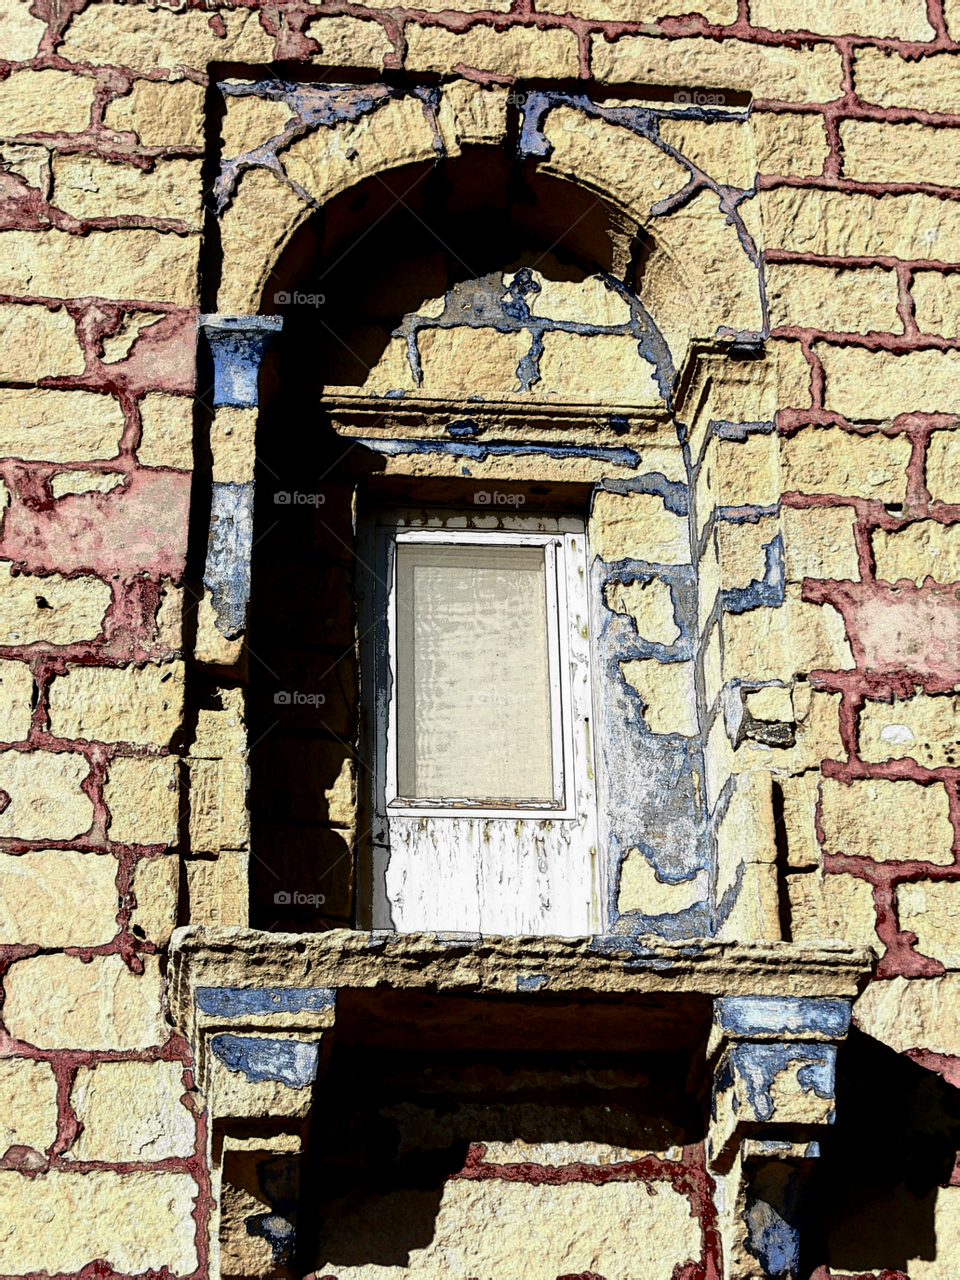 Facade in Gozo village